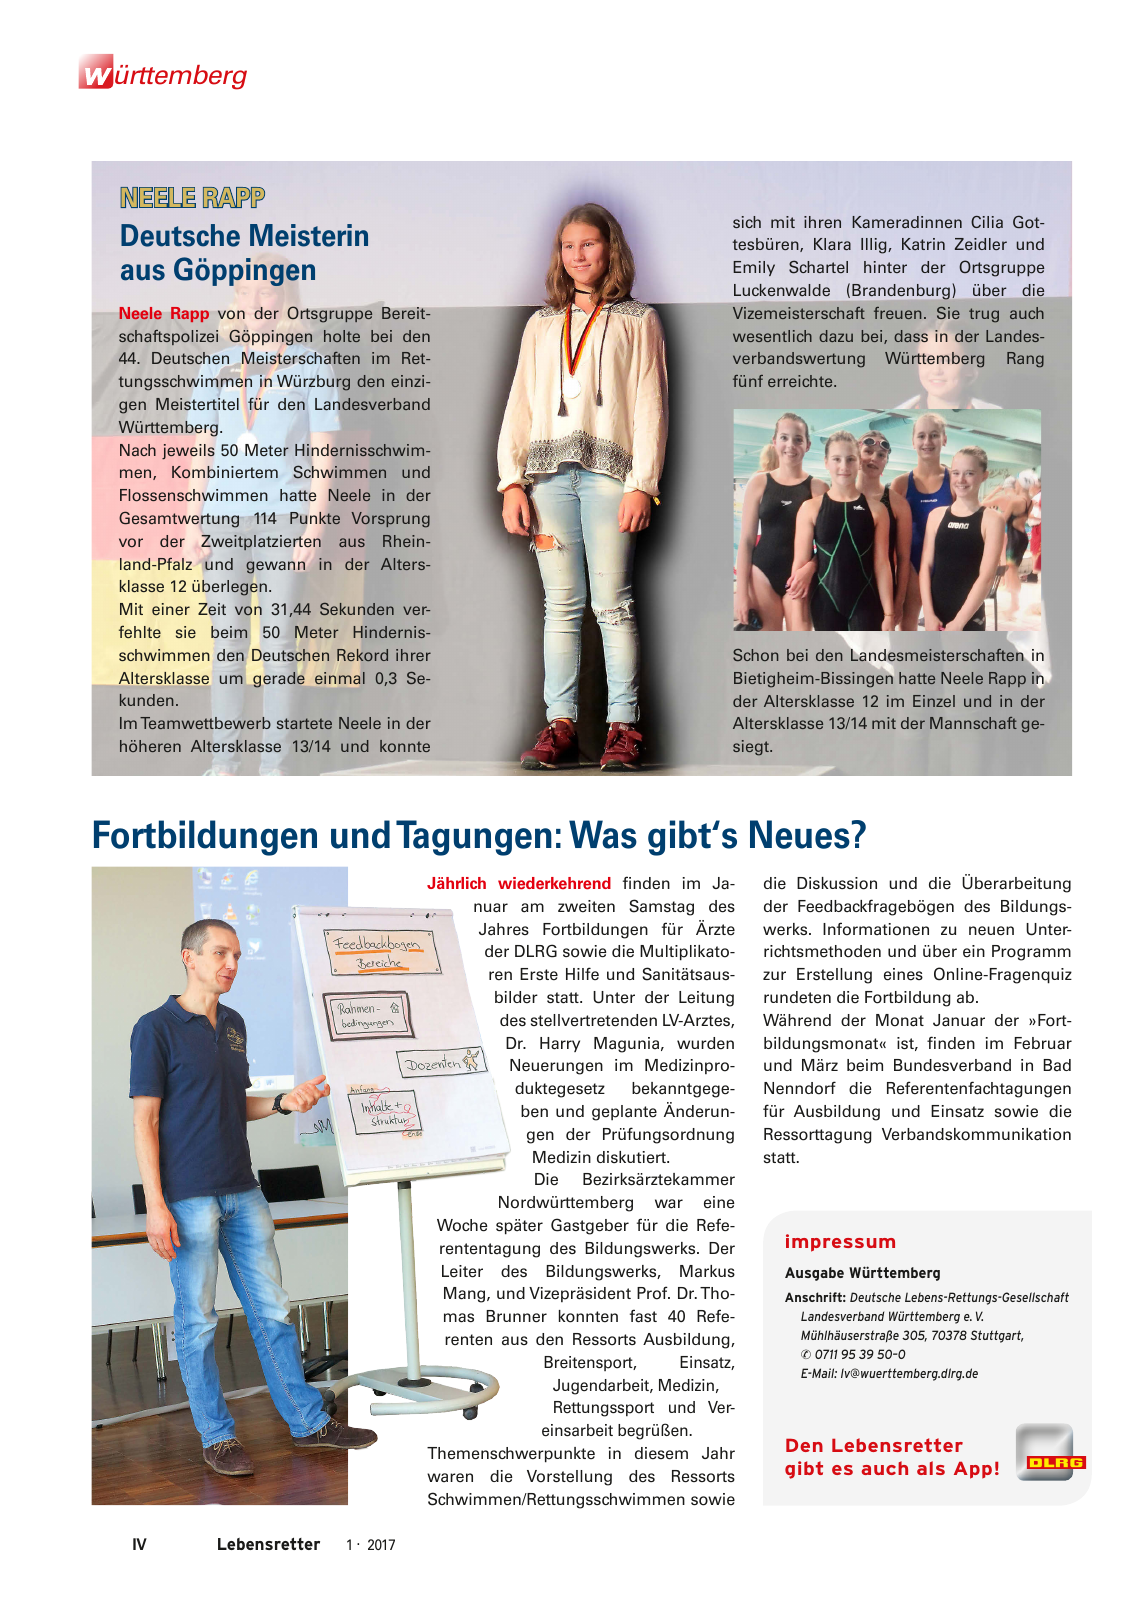 Vorschau Lebensretter 1/2017 - Regionalausgabe Württemberg Seite 6